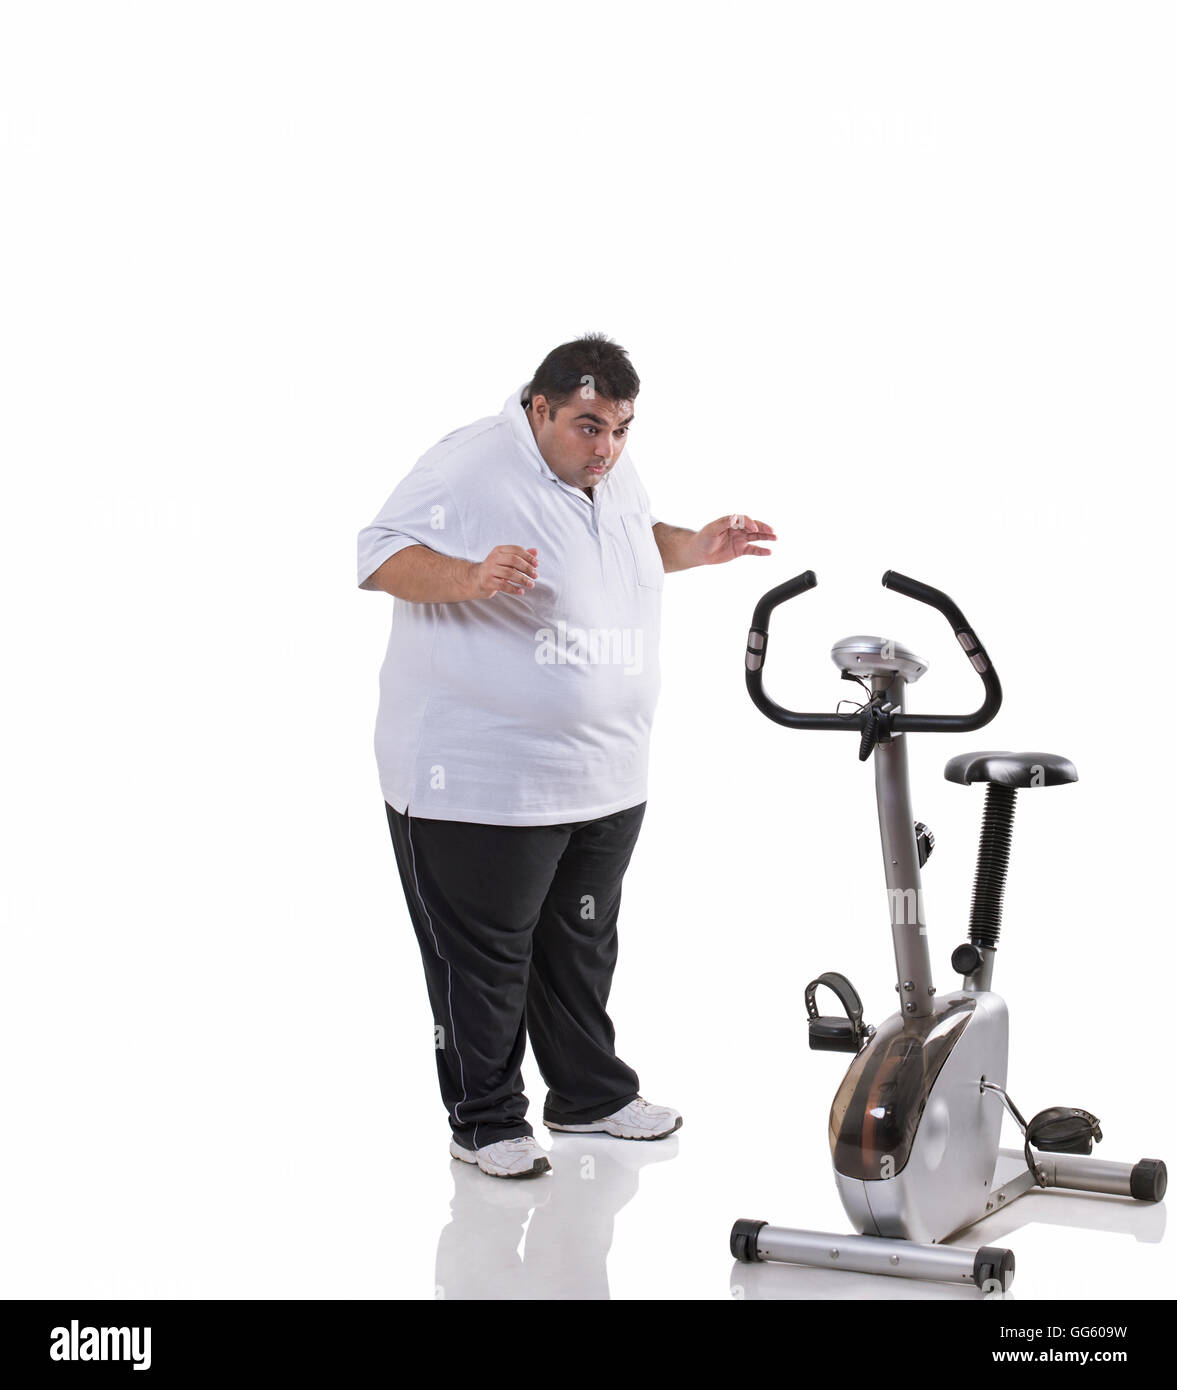 Obese exercise bike immagini e fotografie stock ad alta risoluzione - Alamy